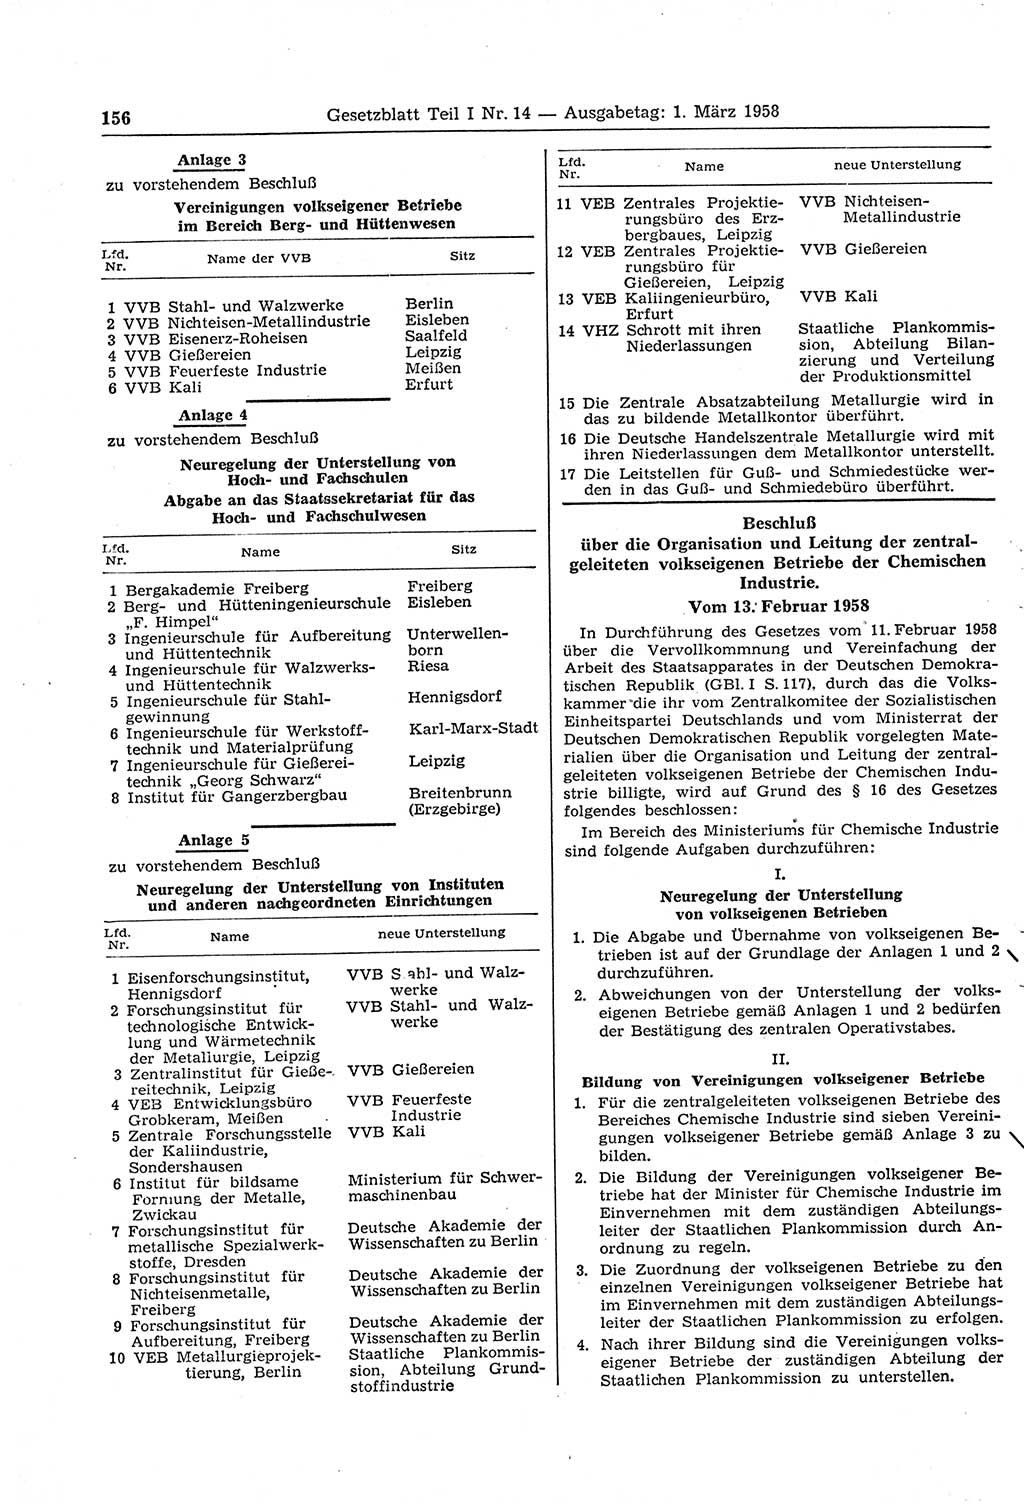 Gesetzblatt (GBl.) der Deutschen Demokratischen Republik (DDR) Teil Ⅰ 1958, Seite 156 (GBl. DDR Ⅰ 1958, S. 156)